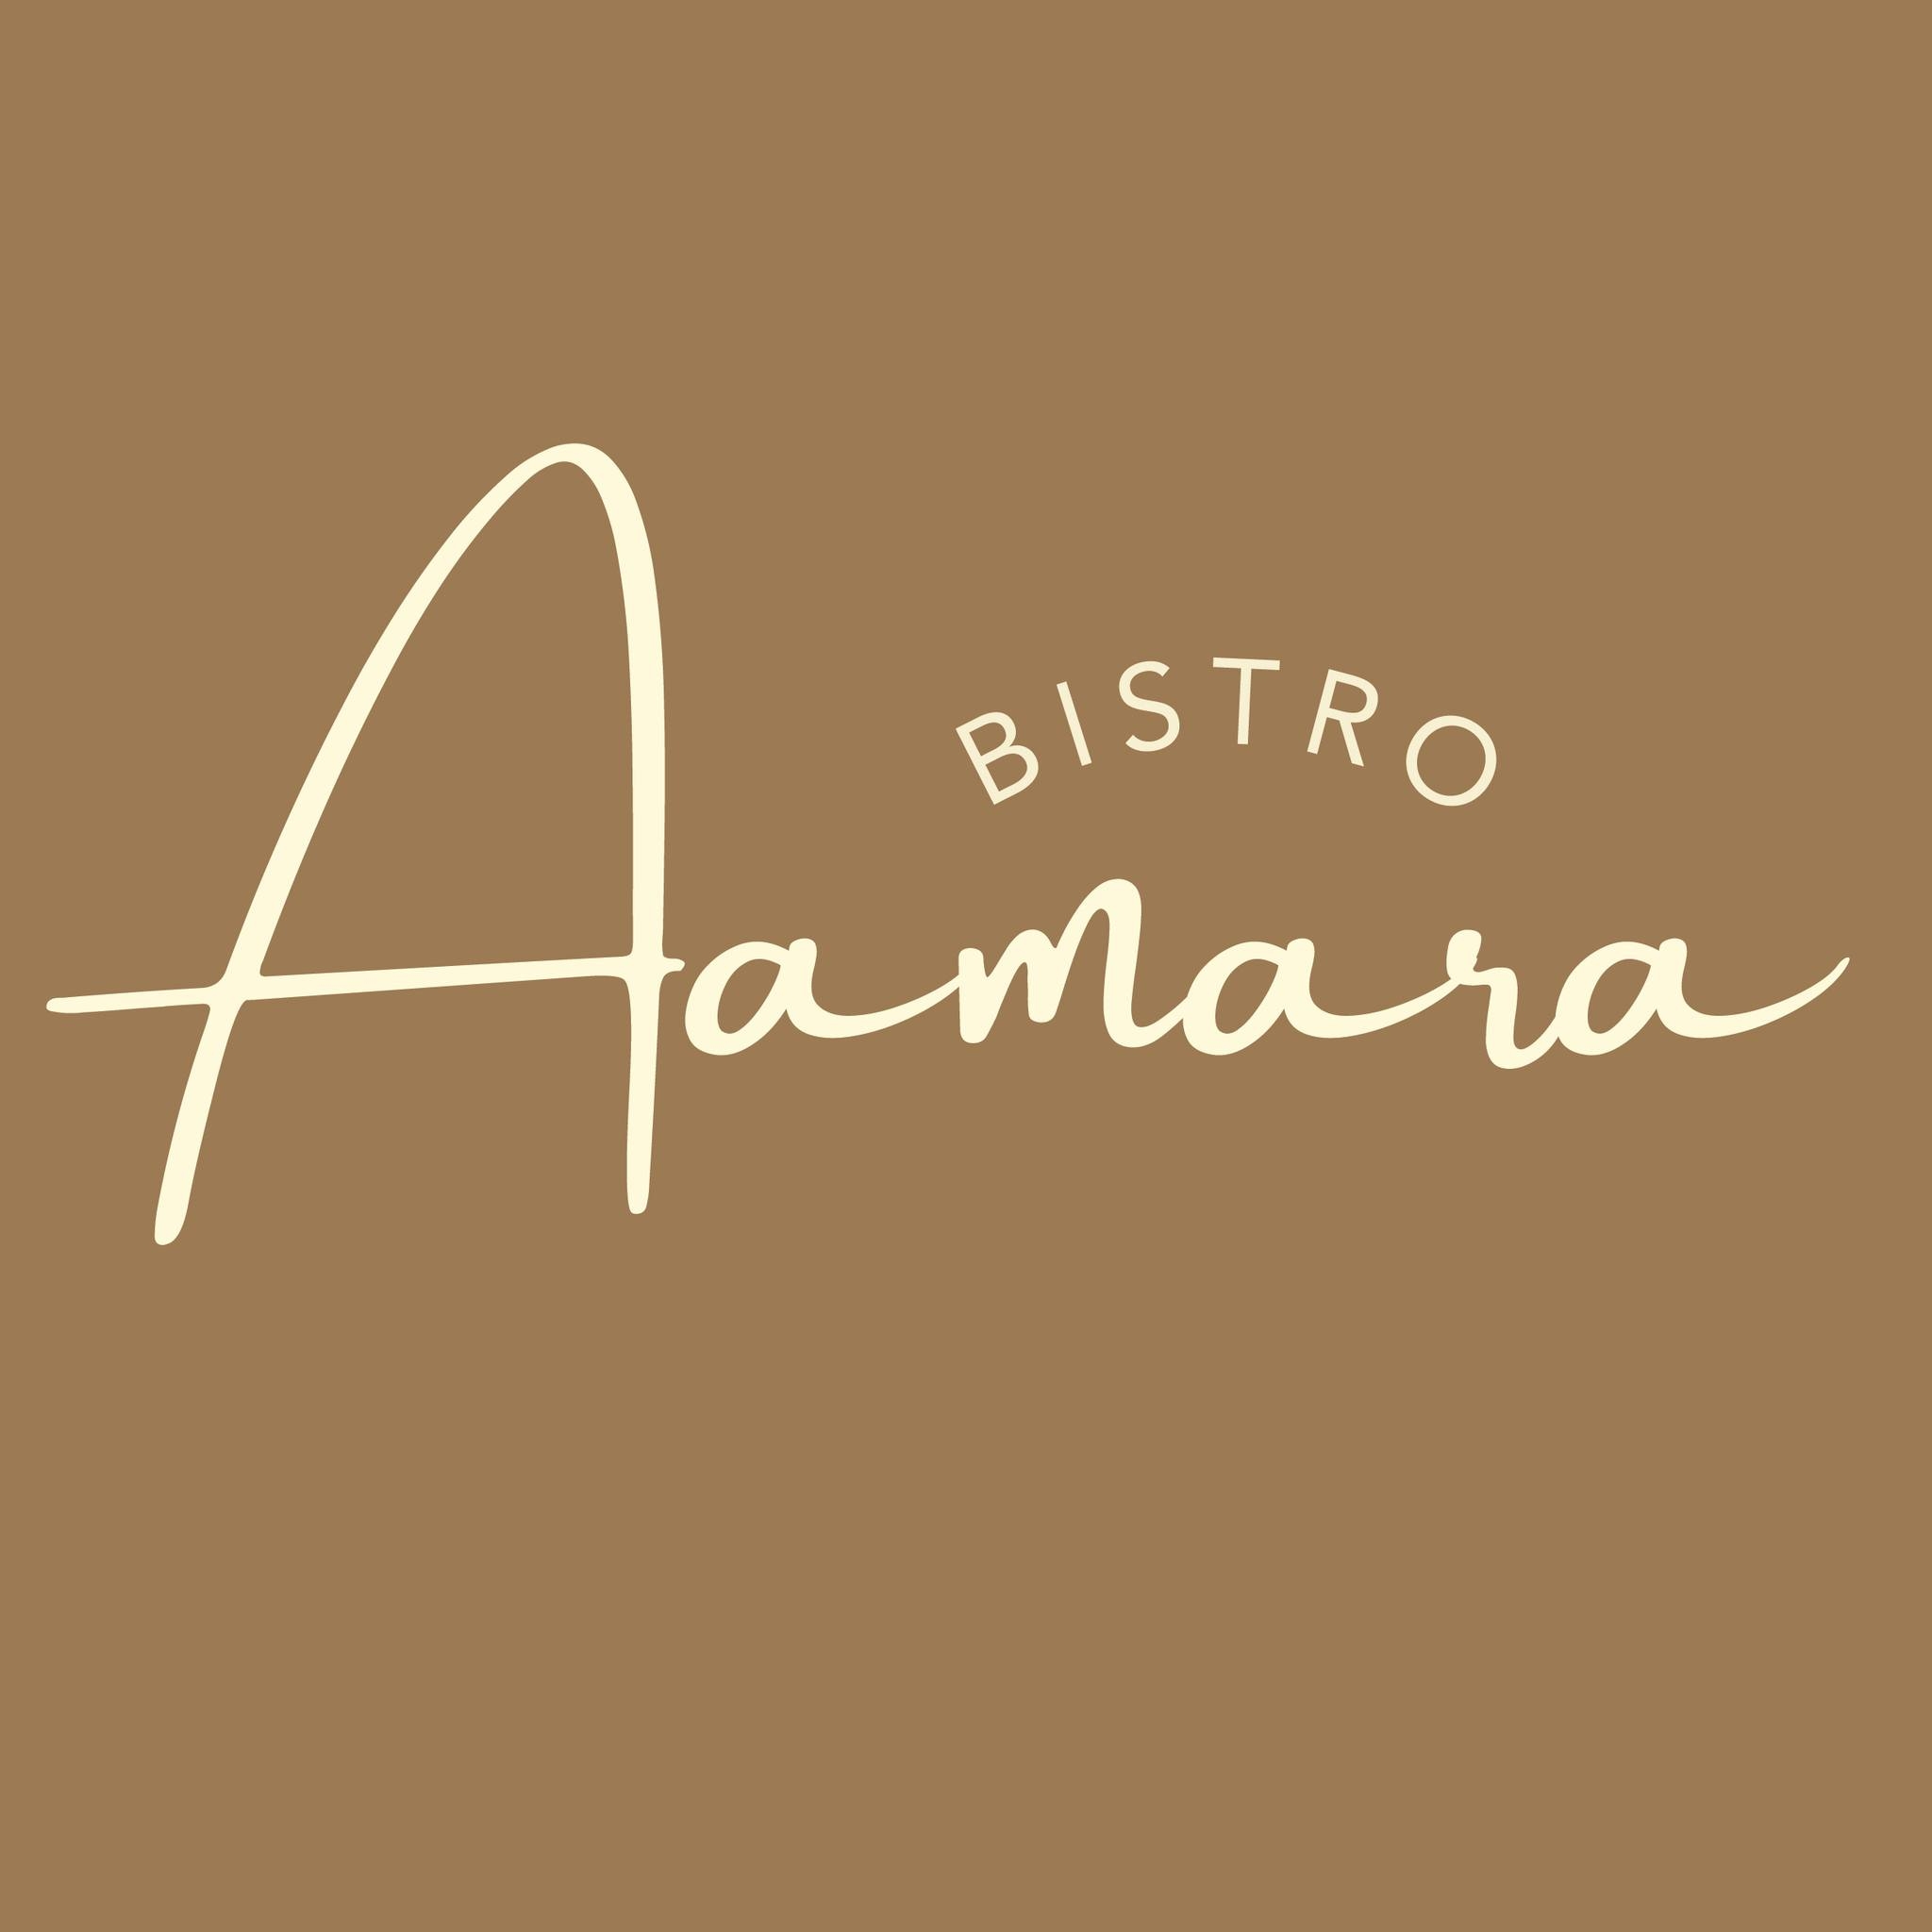 Image result for Bistro Aamara